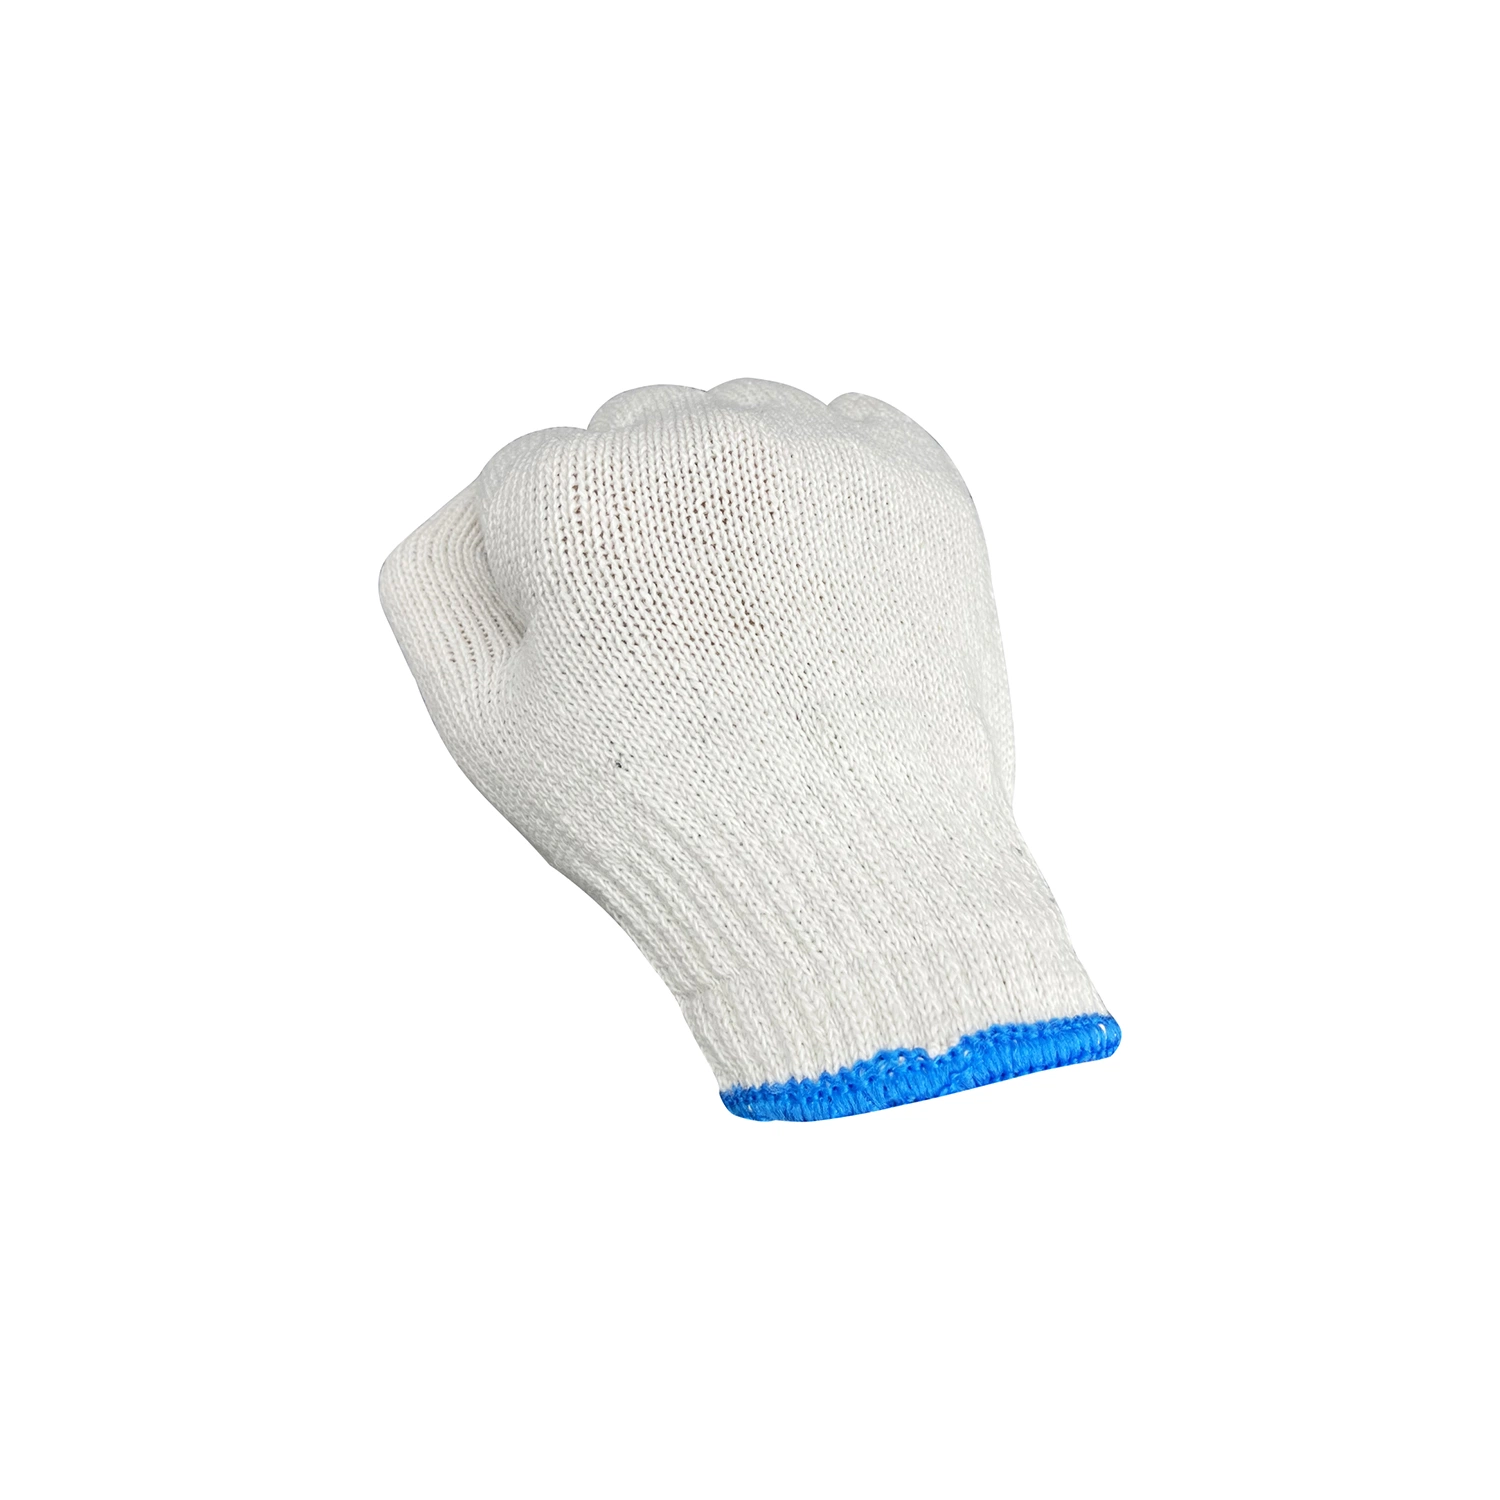 7/10 Gauges Guantes De Punto Cotton Heavy Duty Gloves for Construction